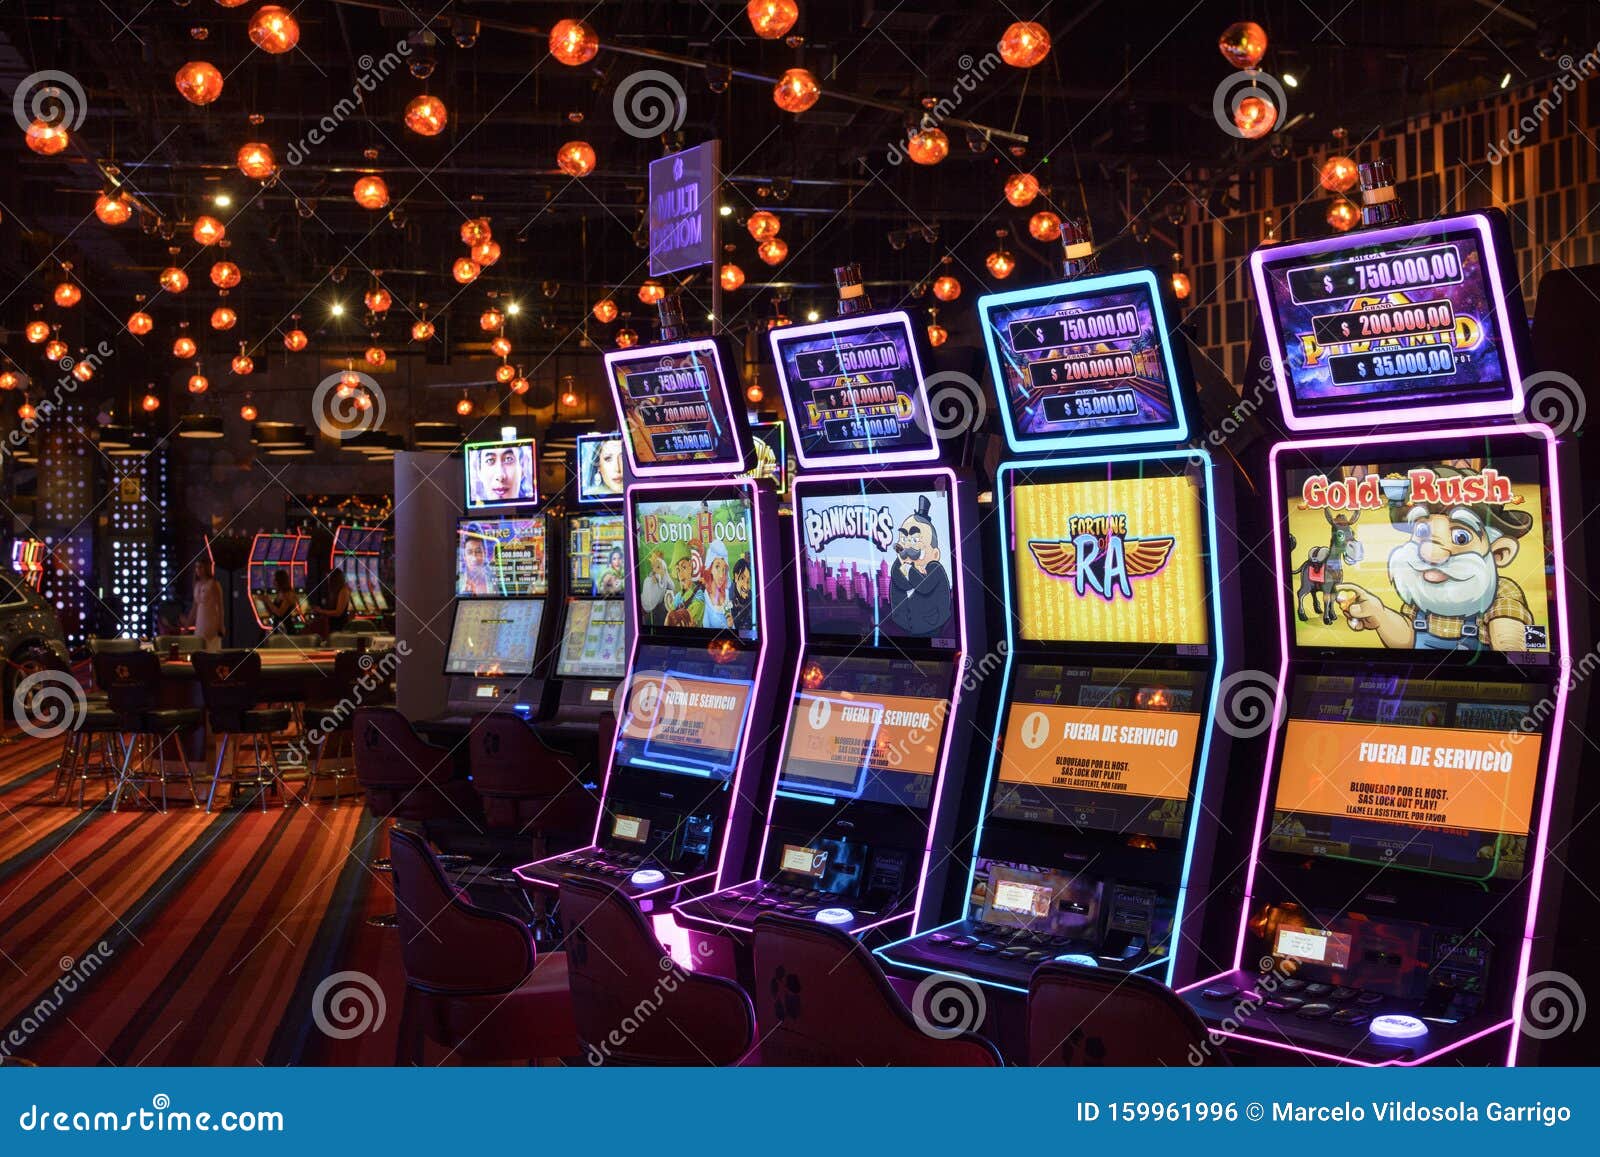 3 consejos sobre jugar casino online Chile que no puedes perderte